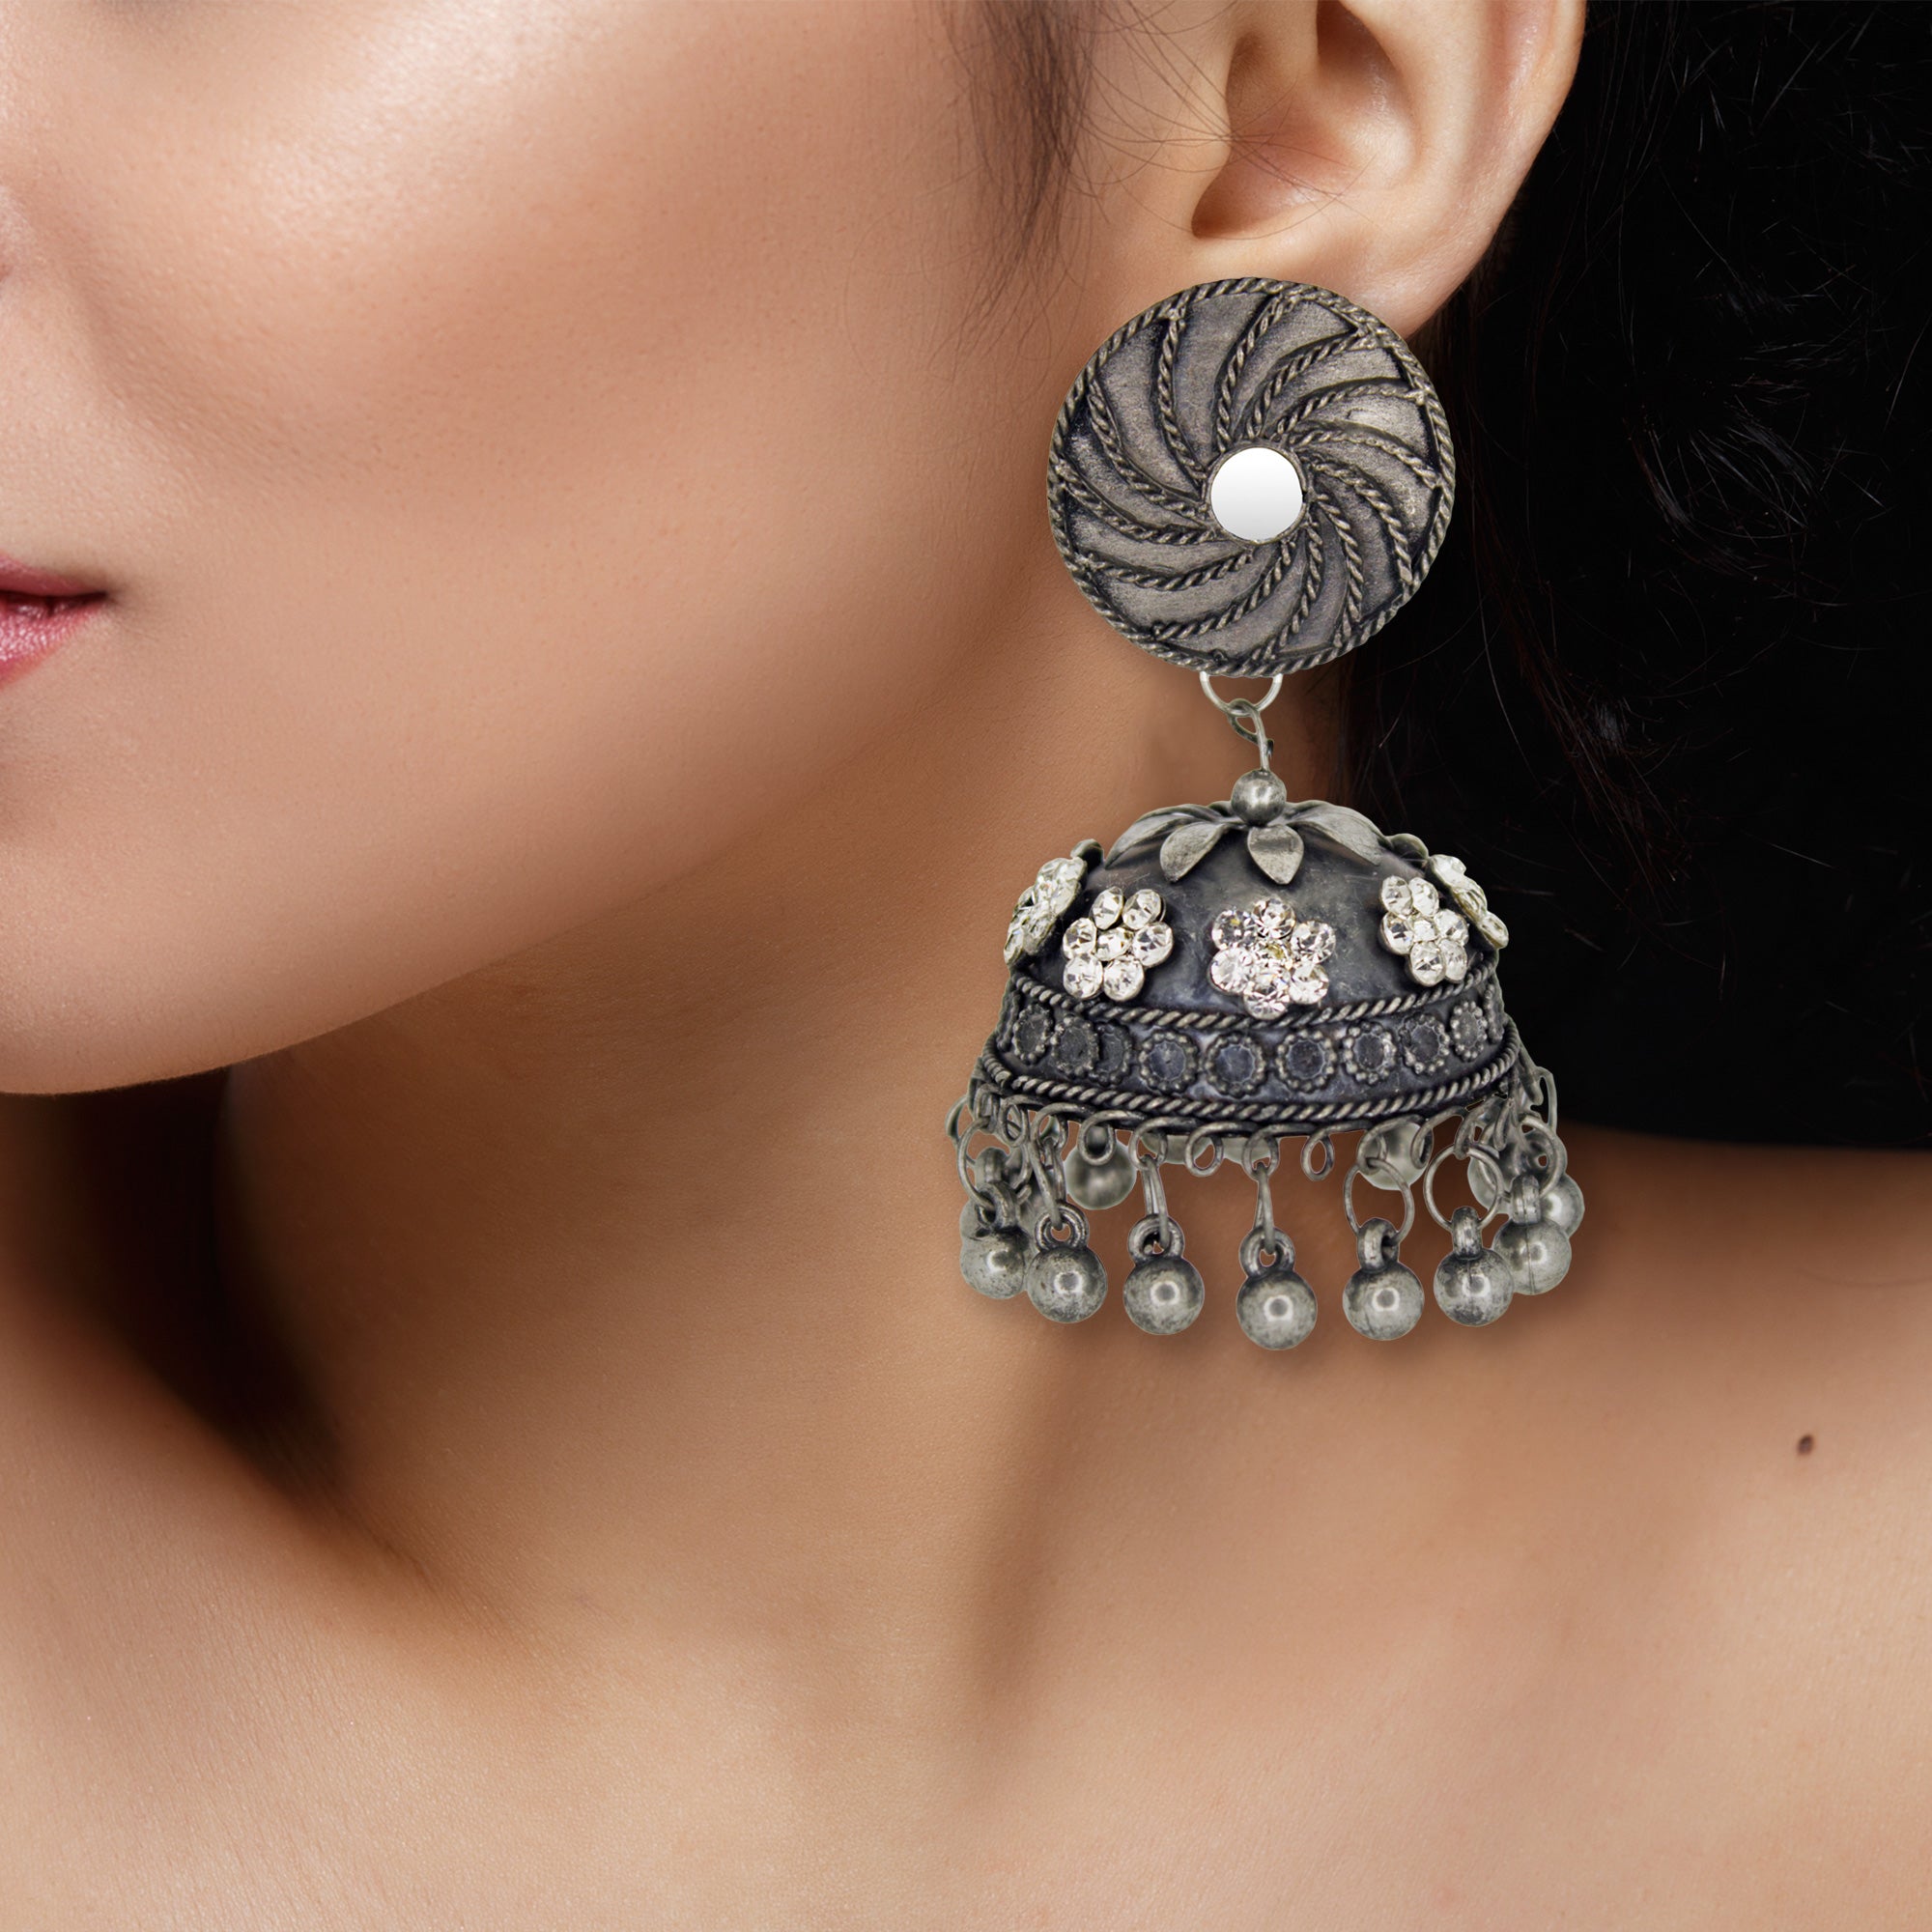 Abhinn Black Polished Floral Design White CZ Stones Jhumka Earrings For Women